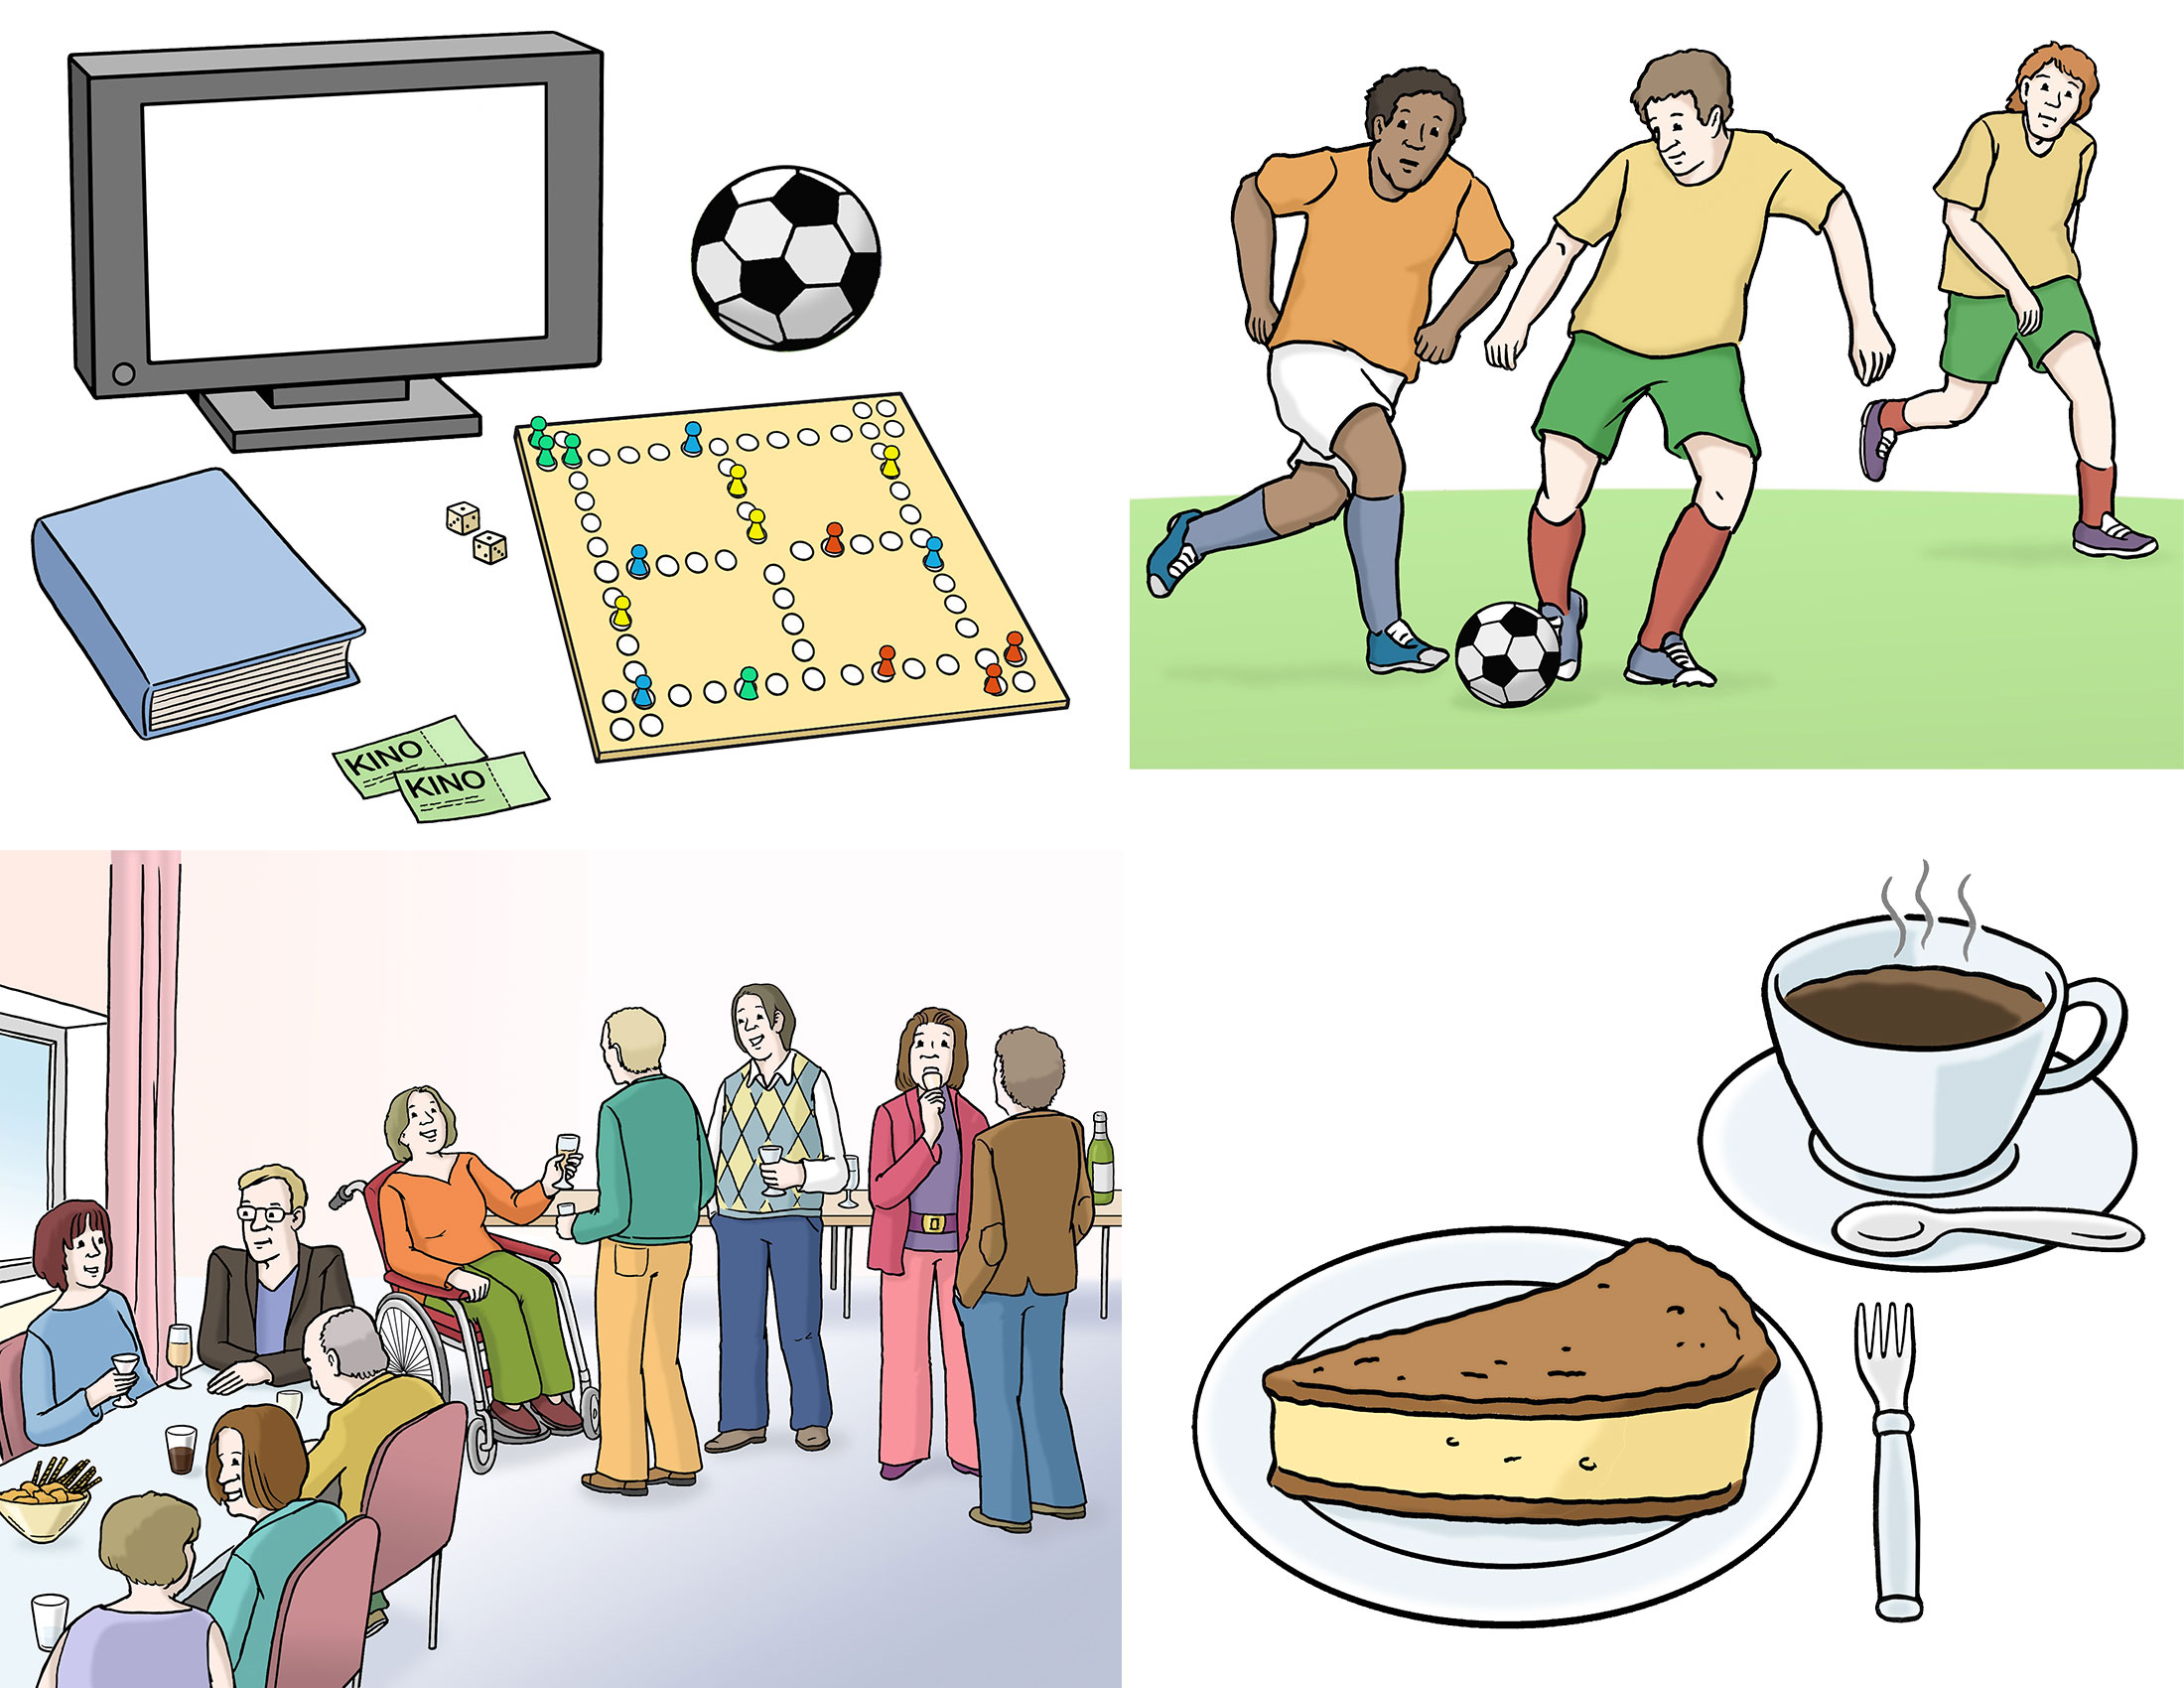 Bildbeschreibung: Es werden Beispiele für das gezeigt, was im NiL angeboten wird. Wie zum Beispiel ein Café, Sportangebote wie Fußball, Partys oder Spieleabende.